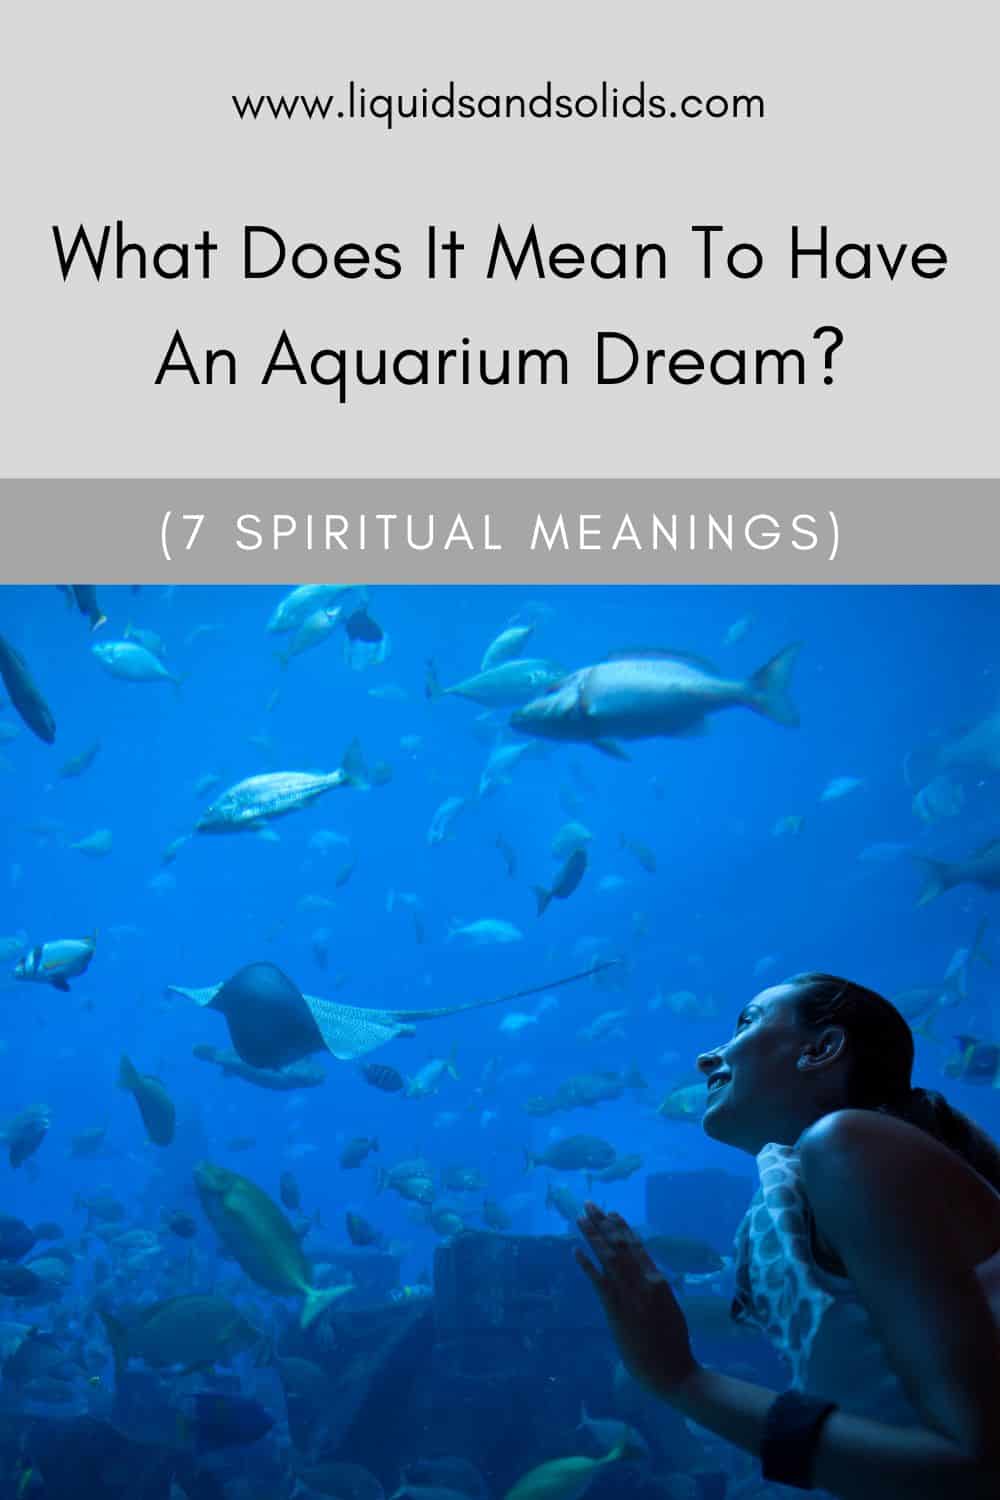  Rêve d'aquarium (7 significations spirituelles)